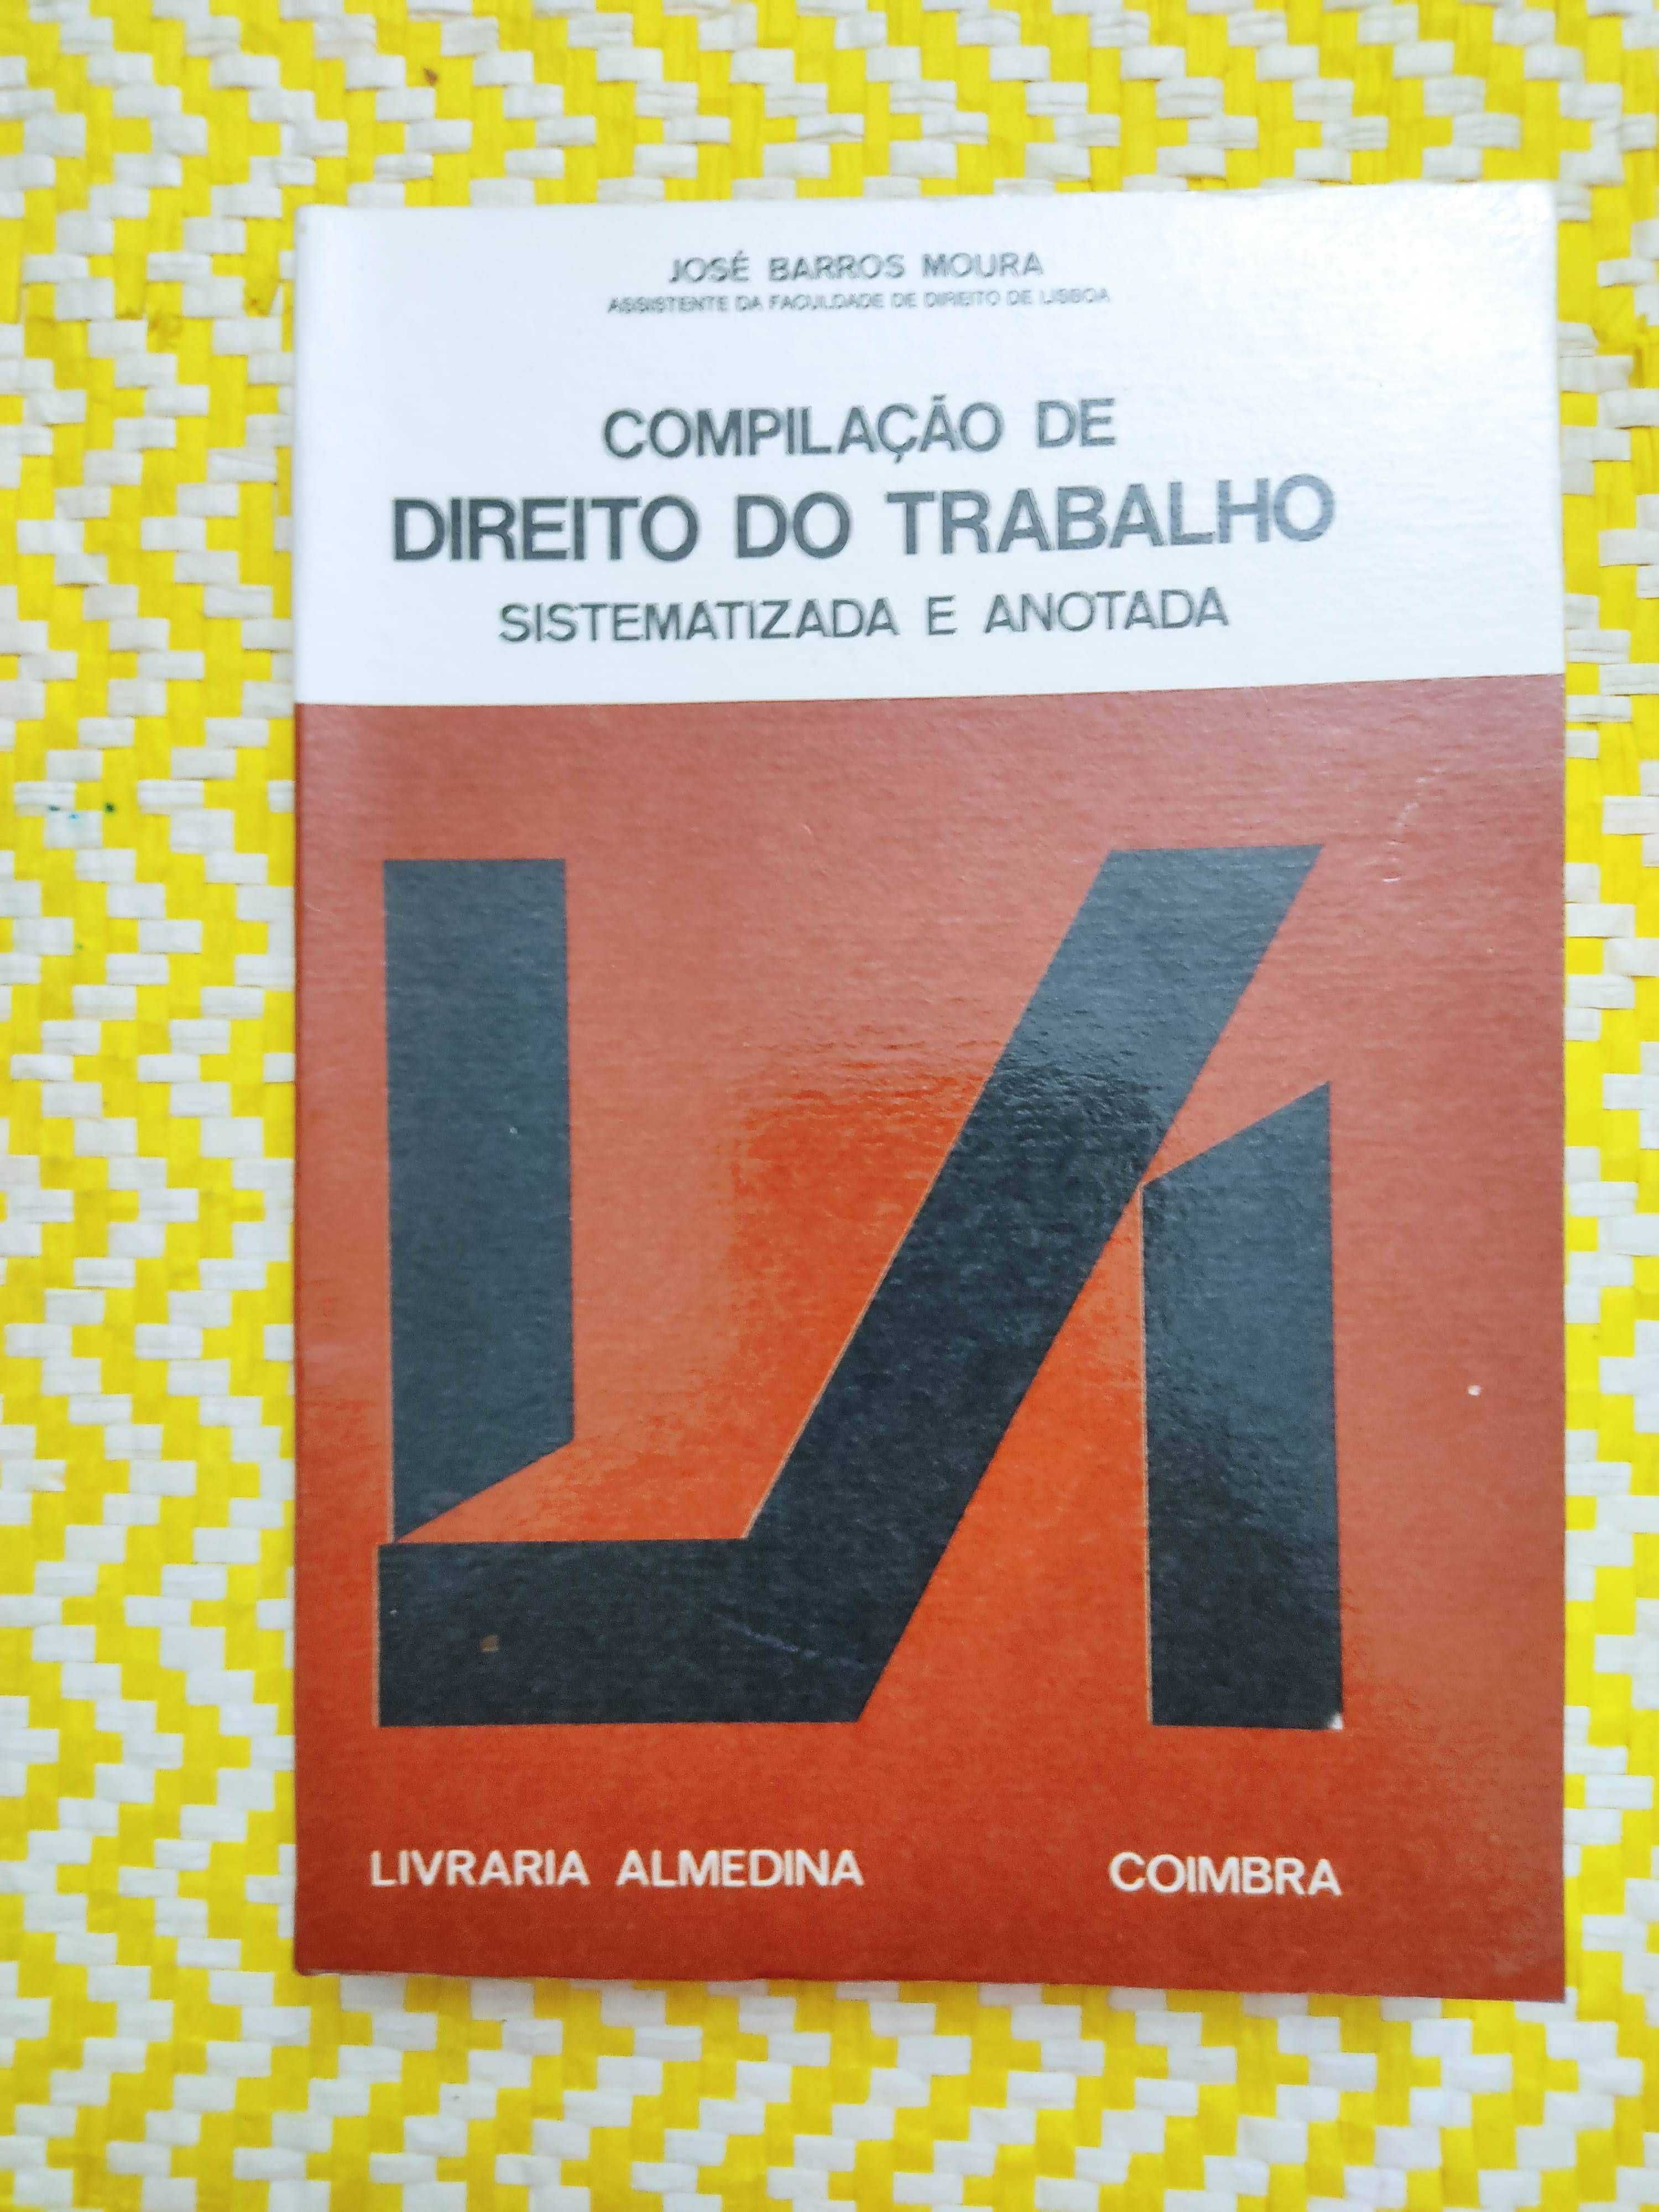 COMPILAÇÃO DE DIREITO DO TRABALHO sistematizada e anotada  .
B Moura